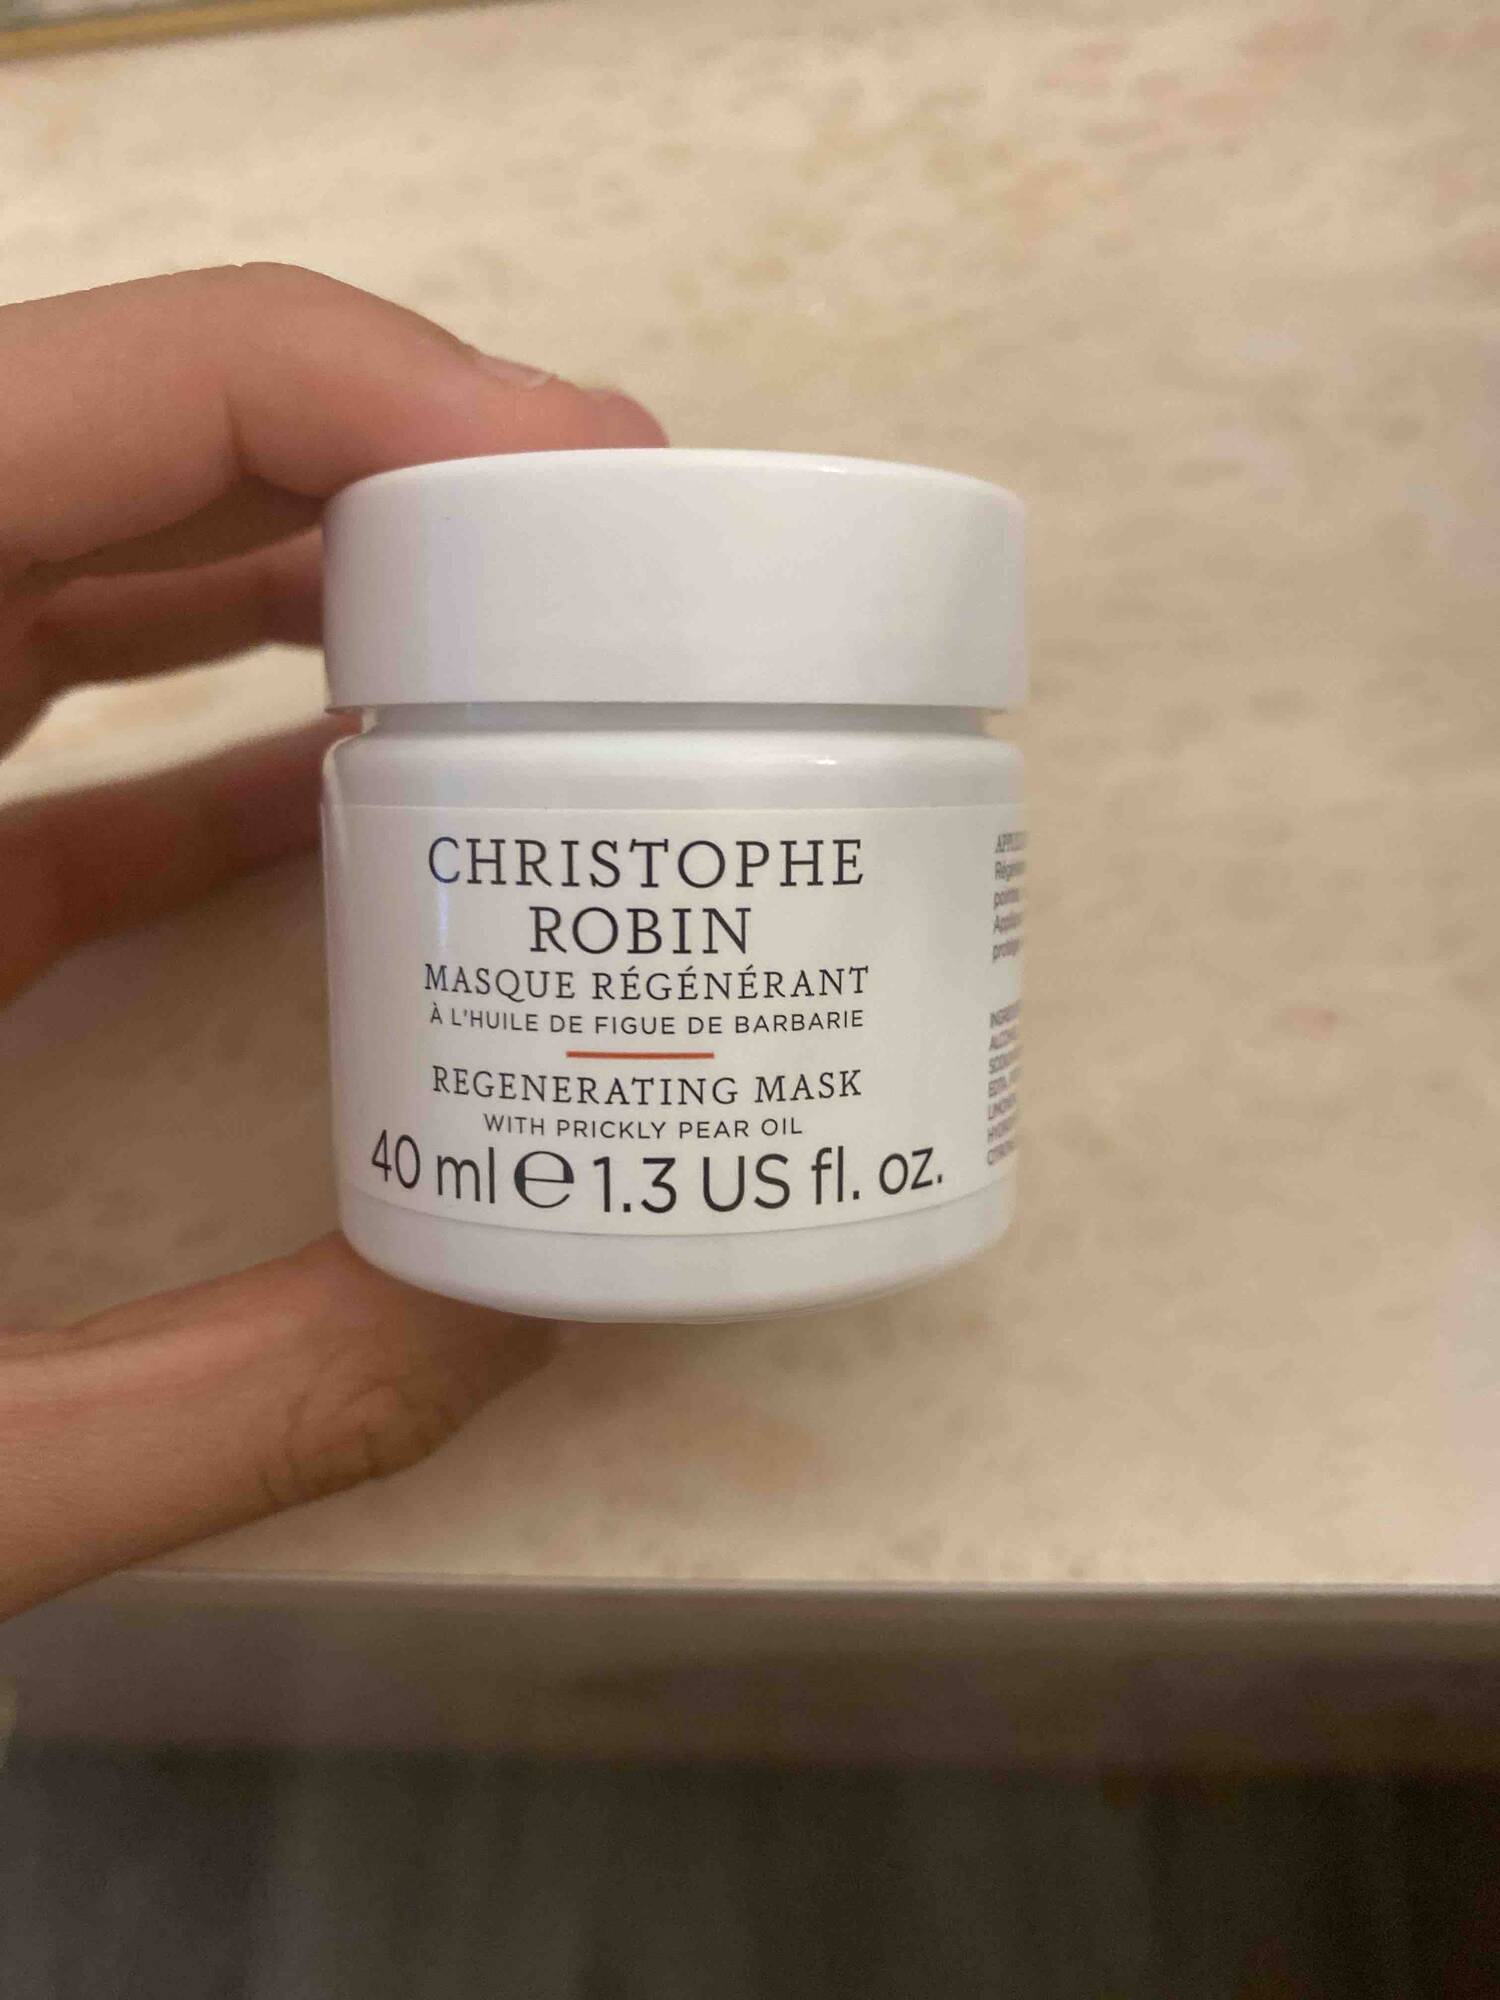 CHRISTOPHE ROBIN - Masque régénerant à l'huile de figue de barbarie